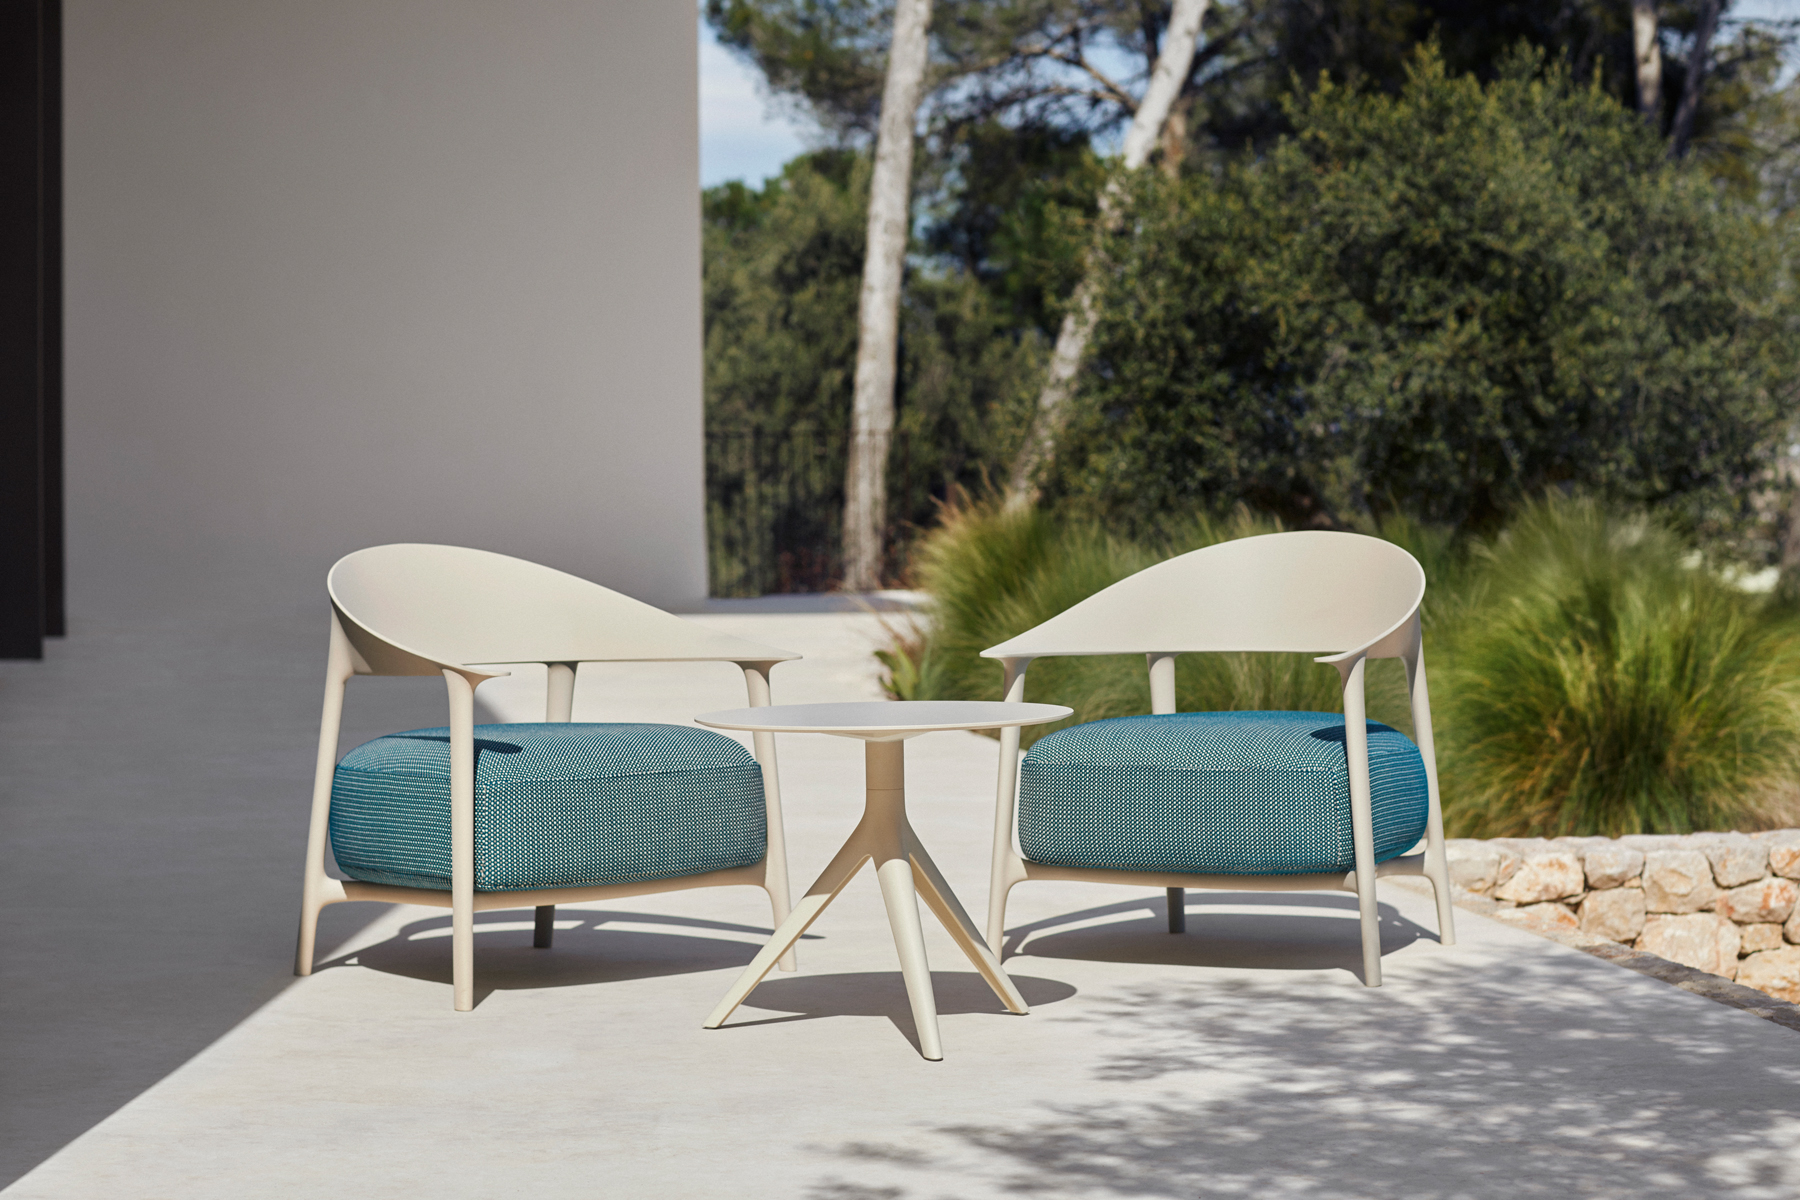 El sillón África y la silla Manta, nuevas piezas creadas por Eugeni Quitllet para Vondom, que evoluciona hacia productos refinados más allá del plástico